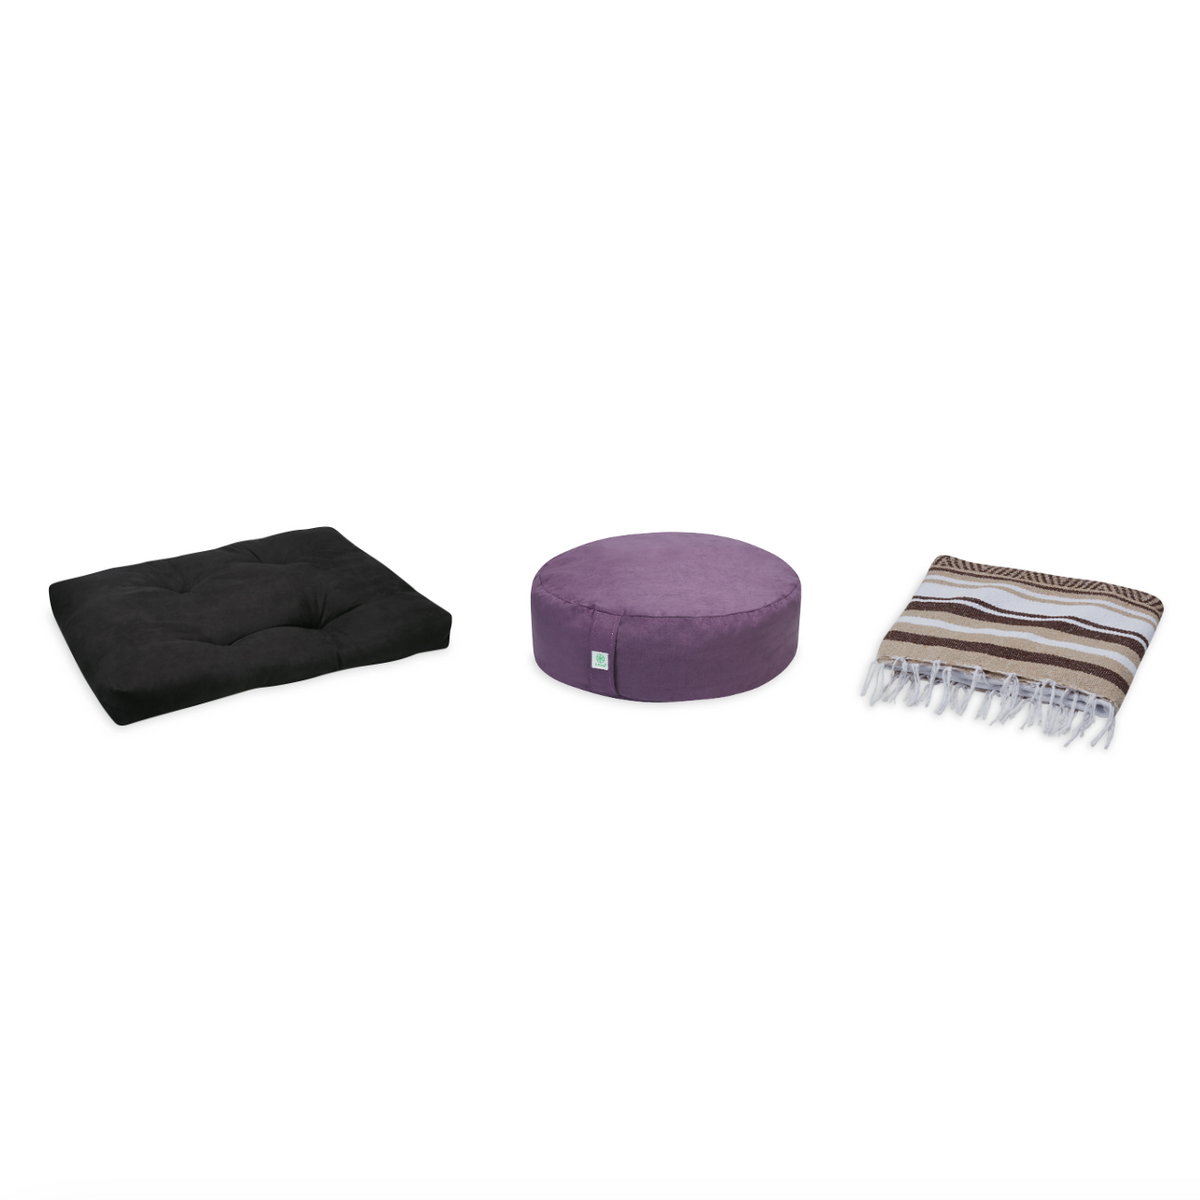 Meditation Bundle - Zabuton (Black), Zafu (Purple), Blanket (Tan/Brown)